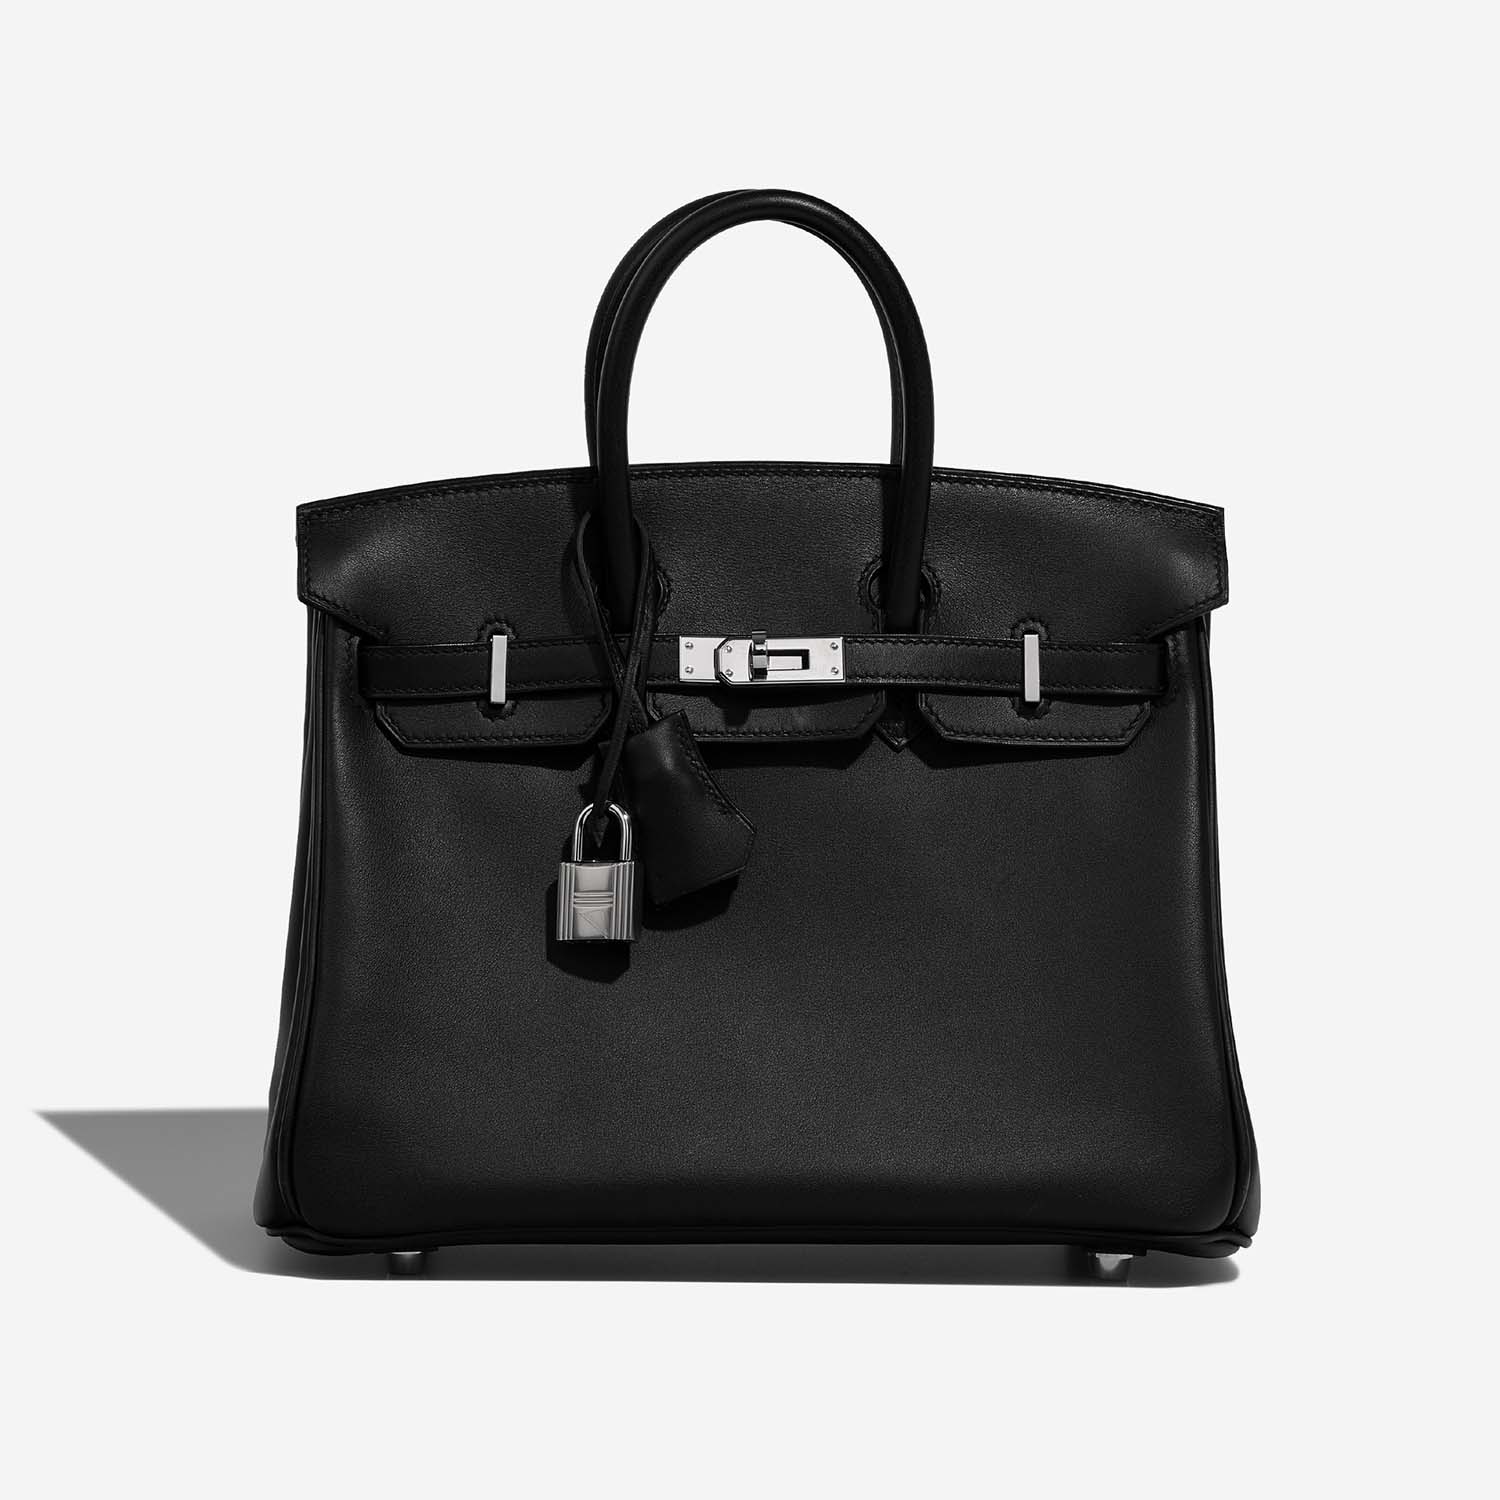 Hermès Birkin 25 Schwarz 2F S | Verkaufen Sie Ihre Designertasche auf Saclab.com